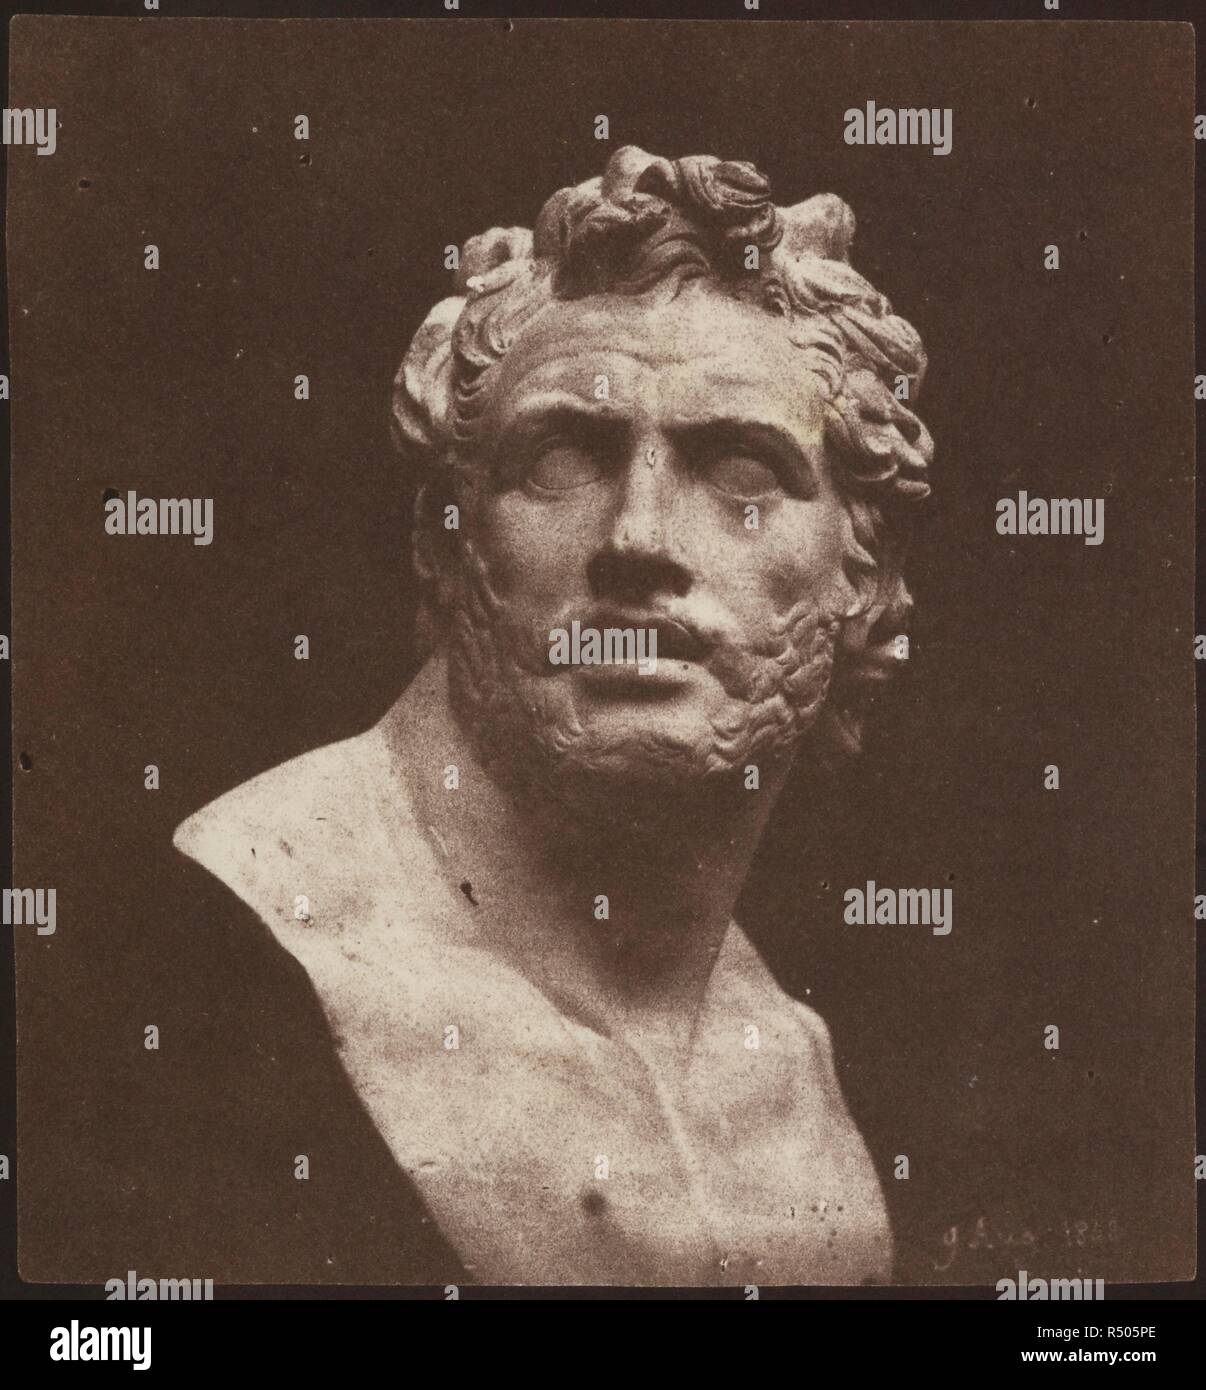 Busto di Patroclus, 9 agosto 1843. 1843. Carta salata stampa da un calotype negativo. Fonte: Talbot Foto 2 (426). Autore: TALBOT, William Henry Fox. Foto Stock